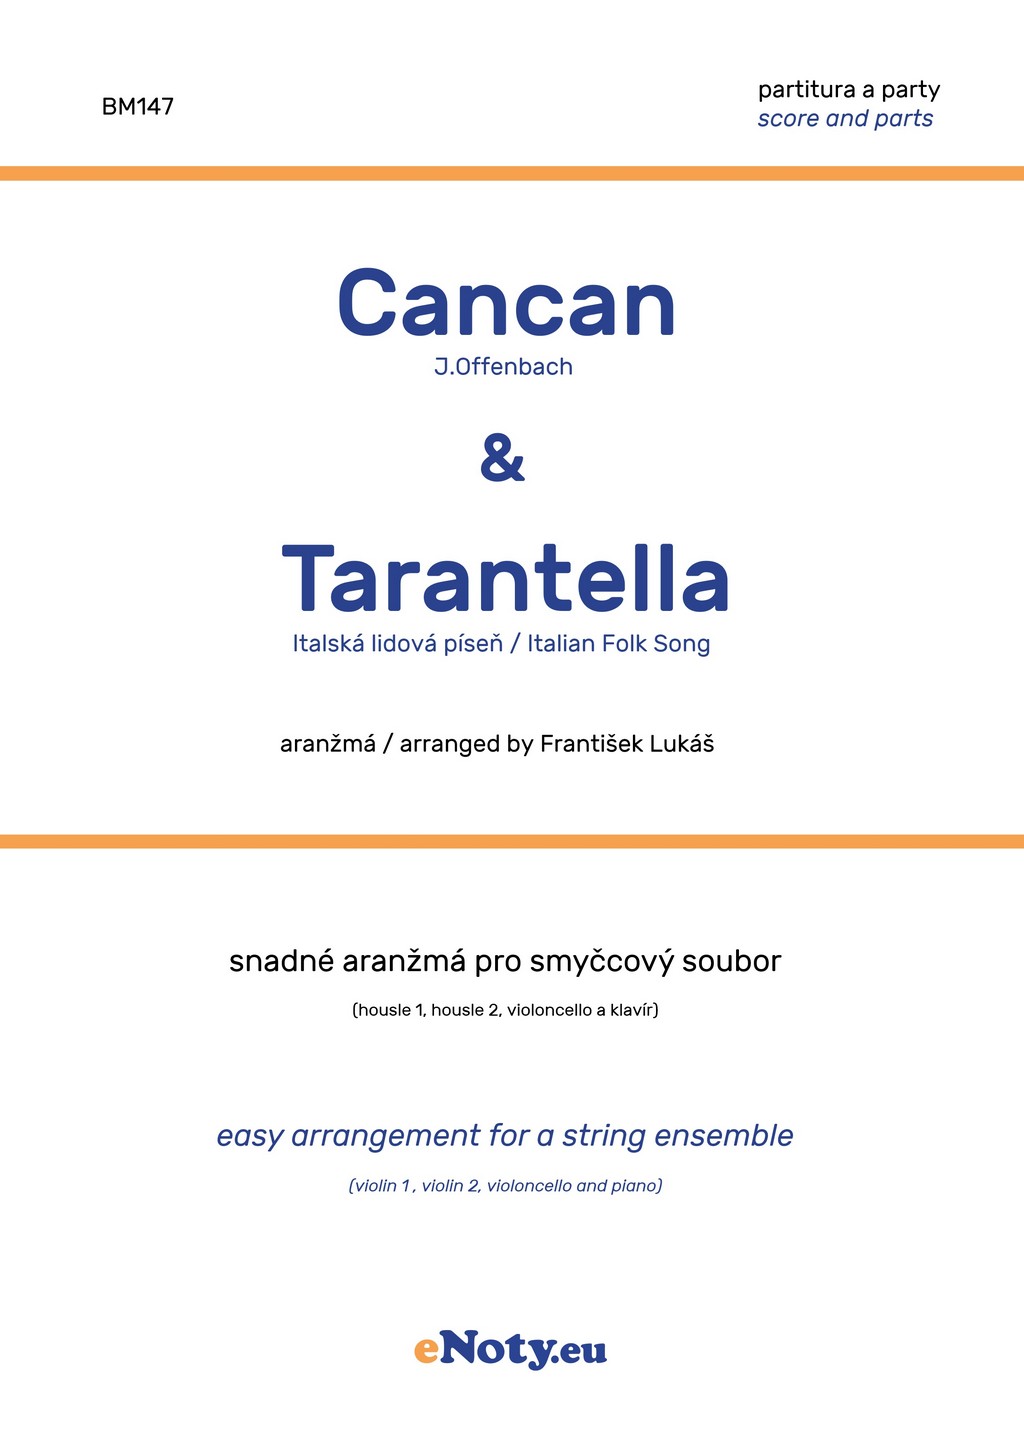 Cancan & Tarantella pro smyčcový soubor